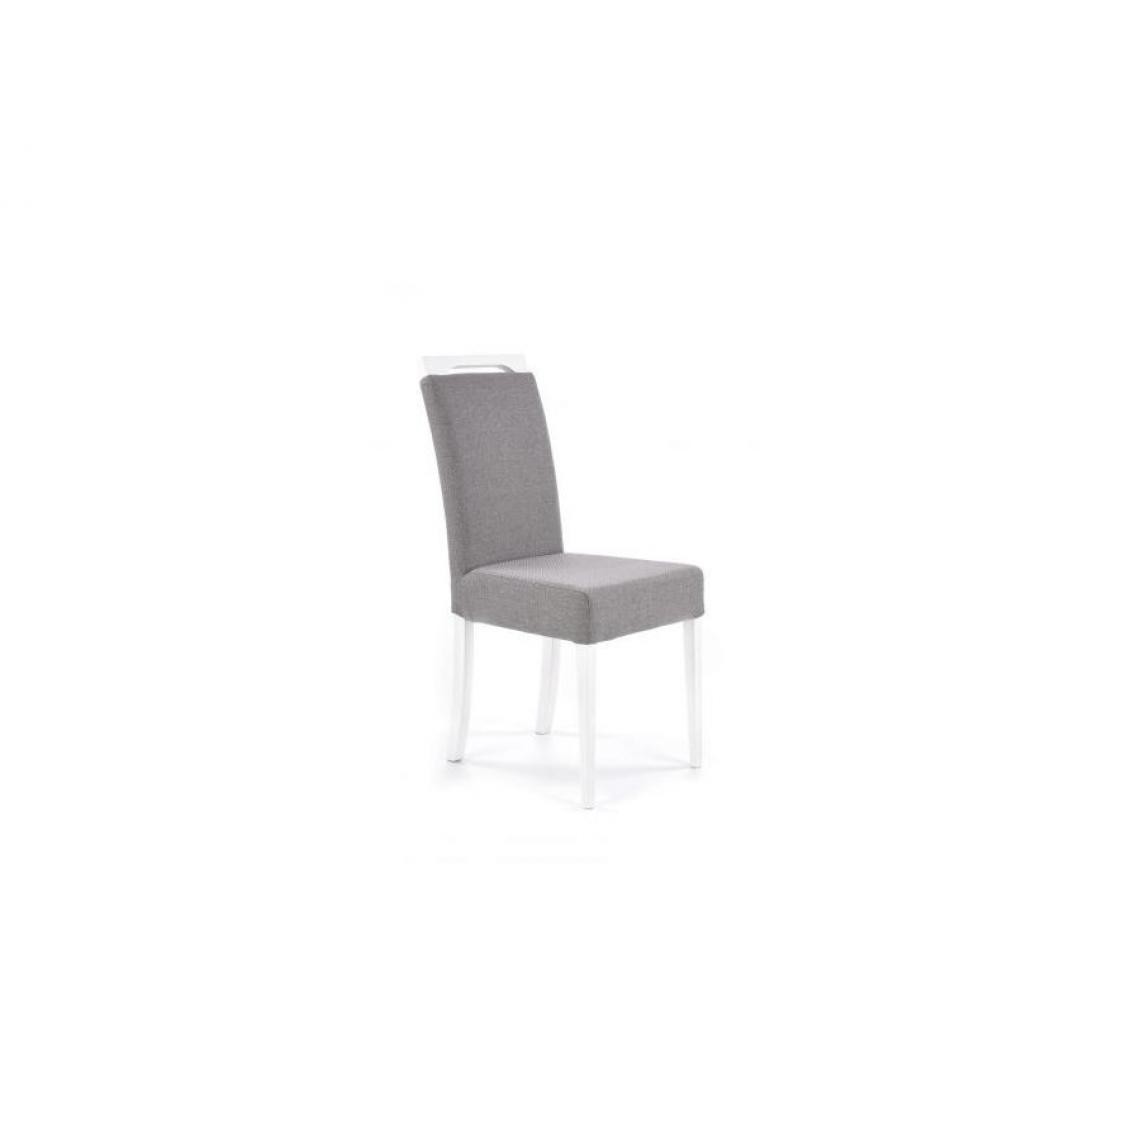 Hucoco - CLARTON - Chaise style moderne salon/salle à manger - 97x58x42 cm - Avec poignée - Gris - Chaises